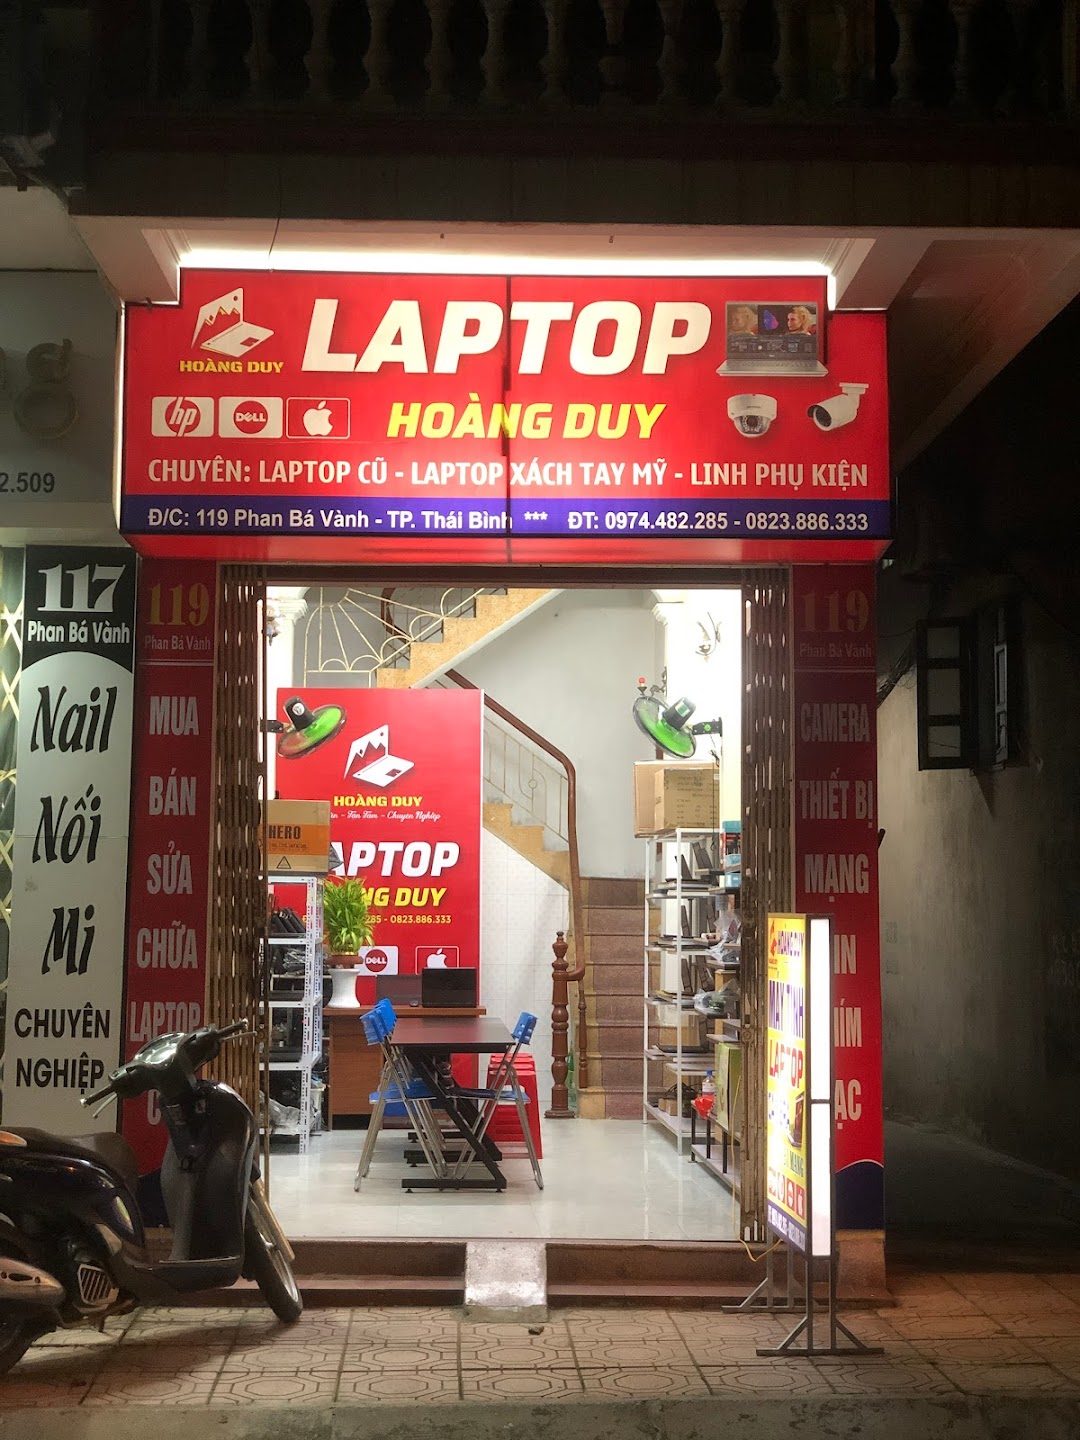 Laptop Hoàng Duy - Laptop cũ số 1 Thái Bình